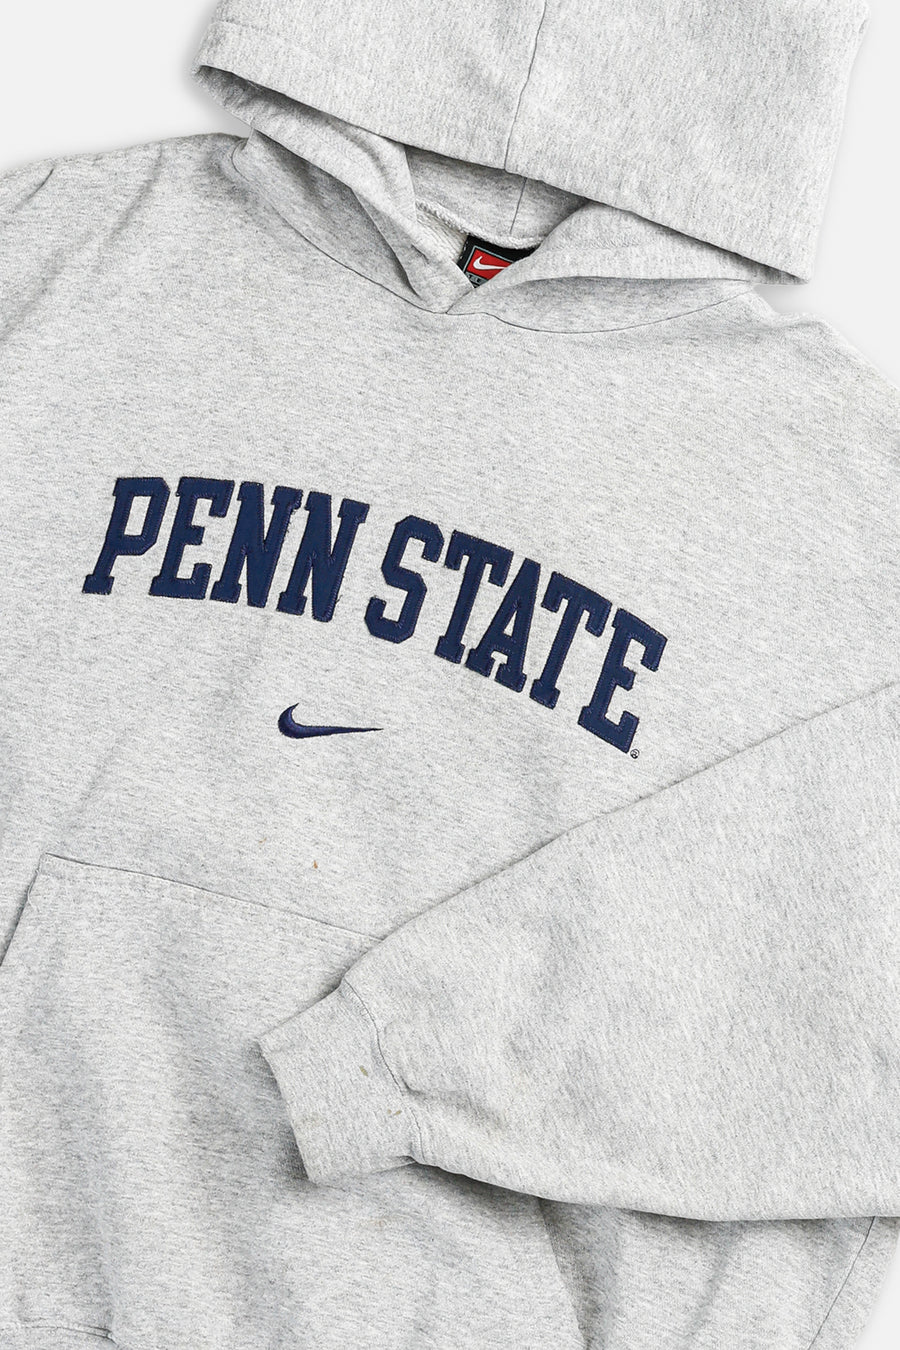 Vintage Penn State Nike Team Sweatshirt - L